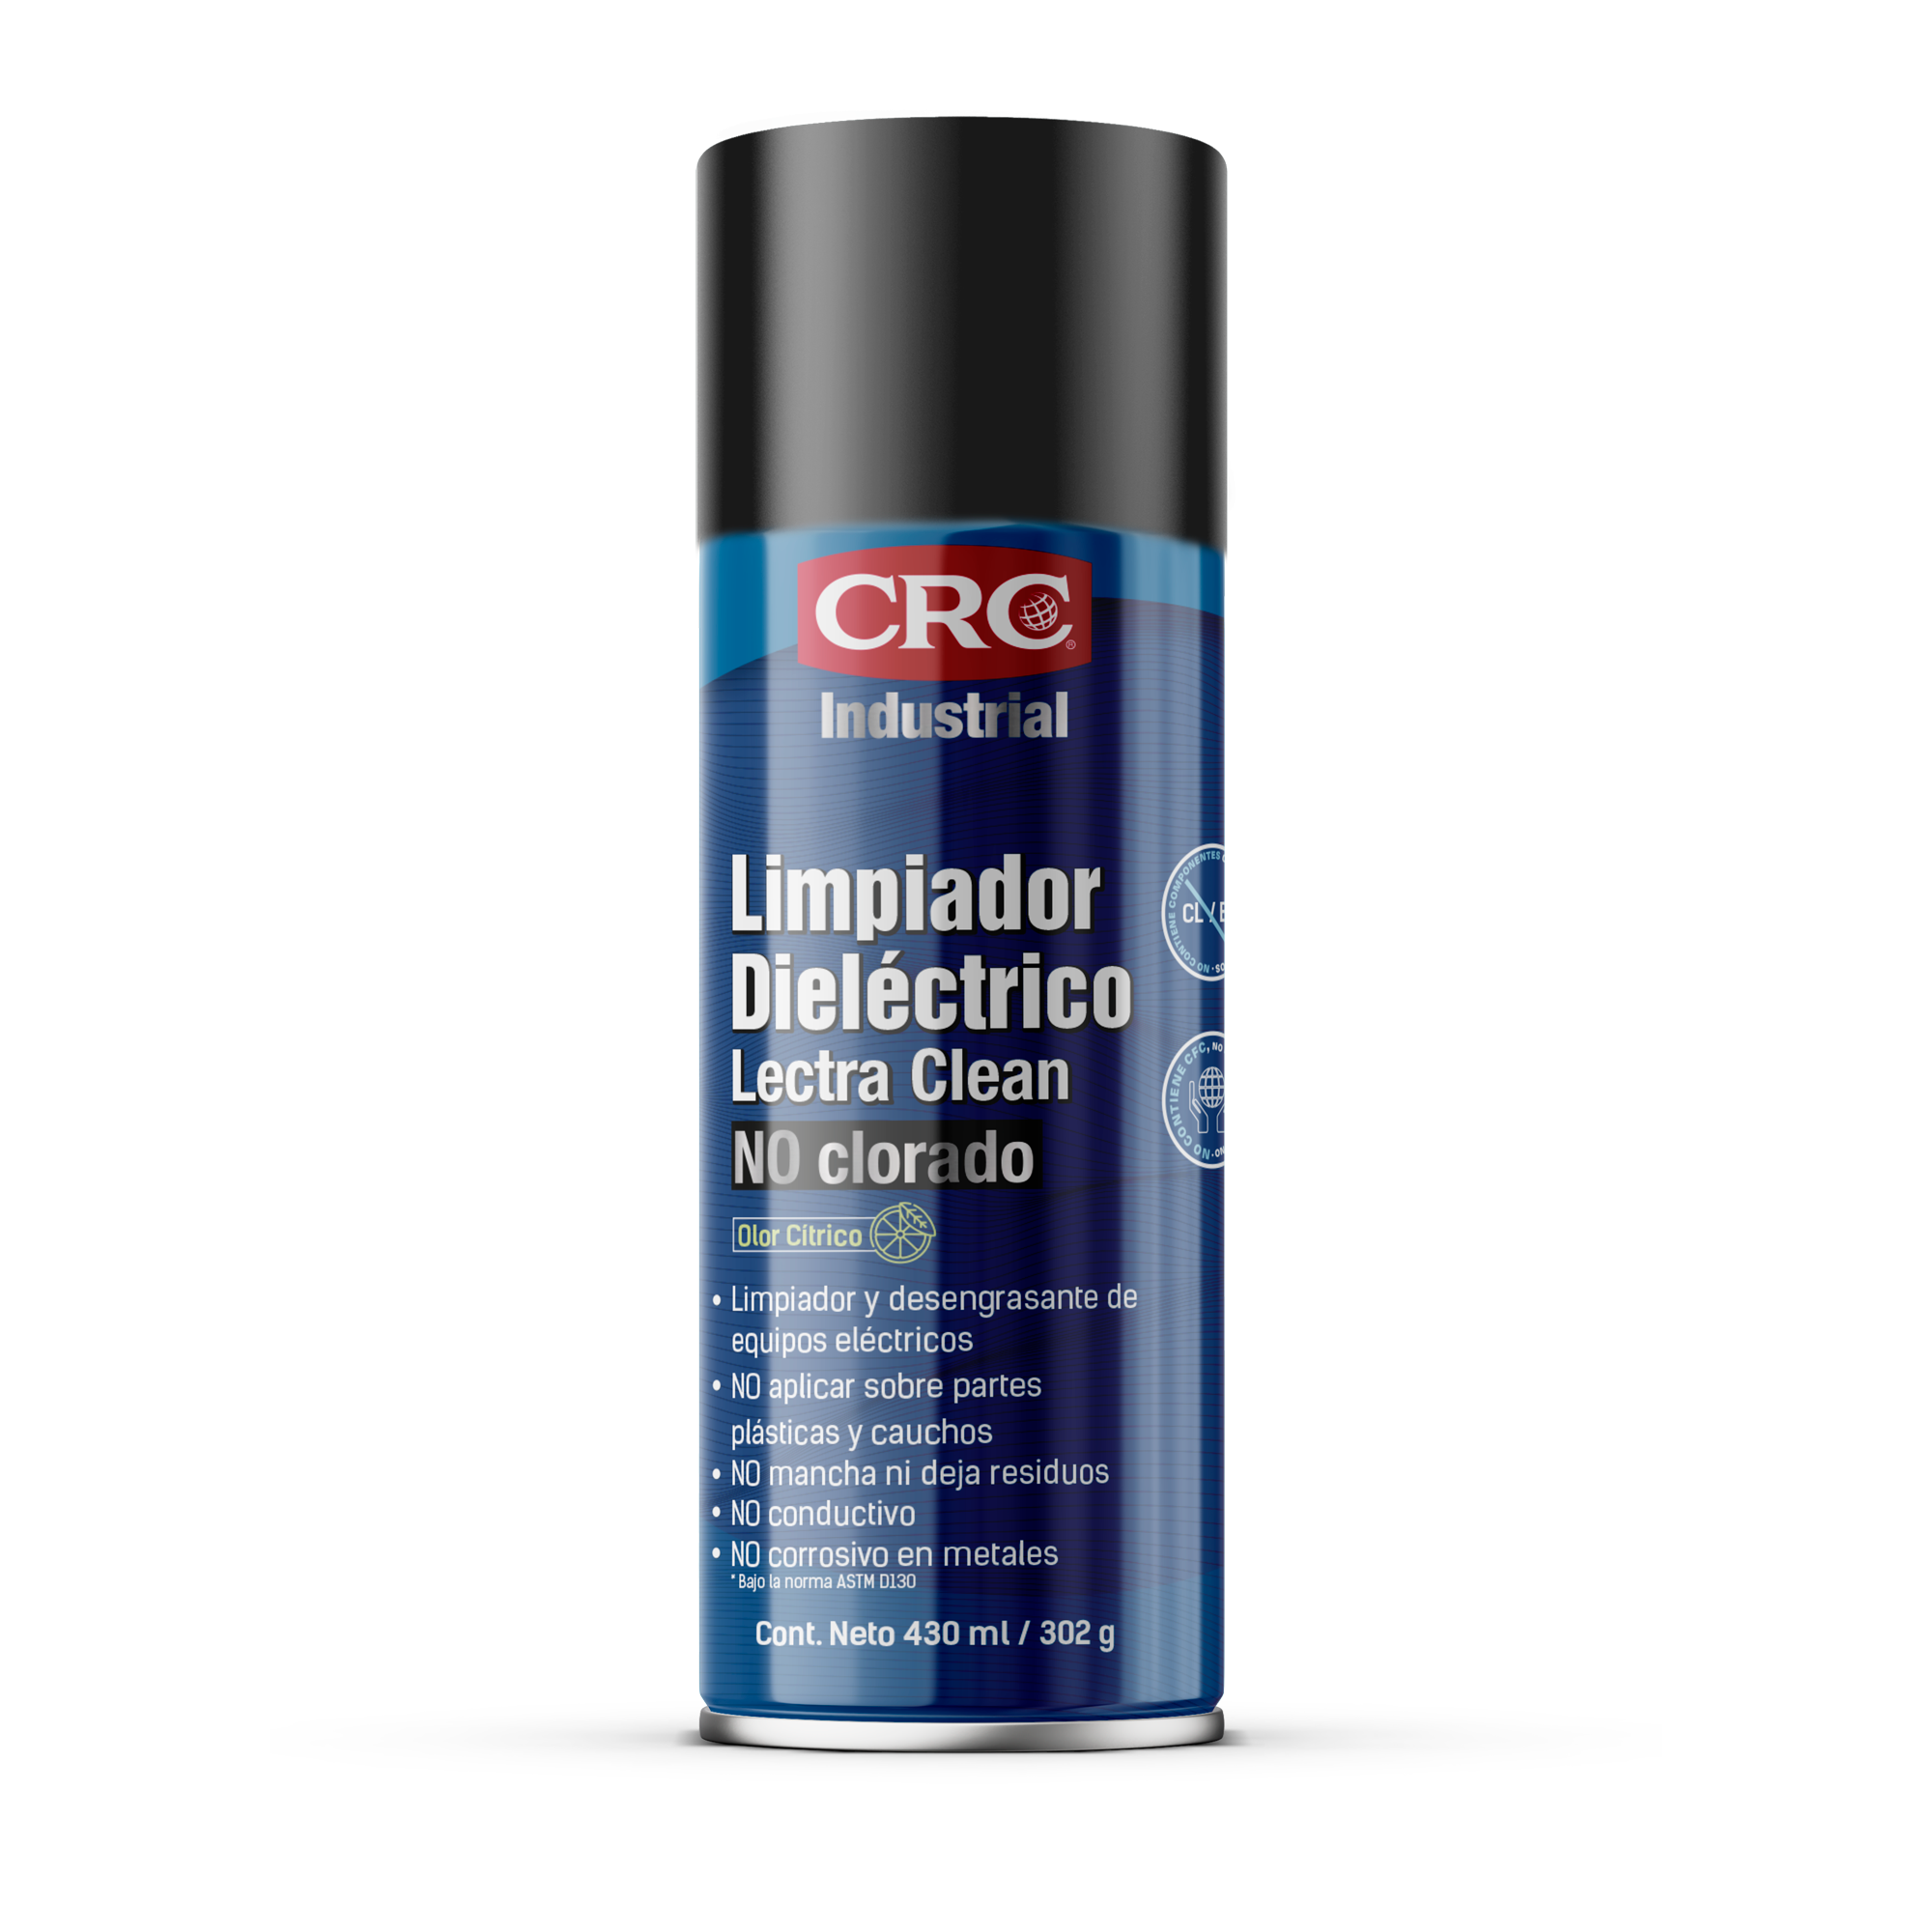 Limpiador de contactos grado eléctrico QD CONTACT CLEANER en aerosol 430 ml  CRC